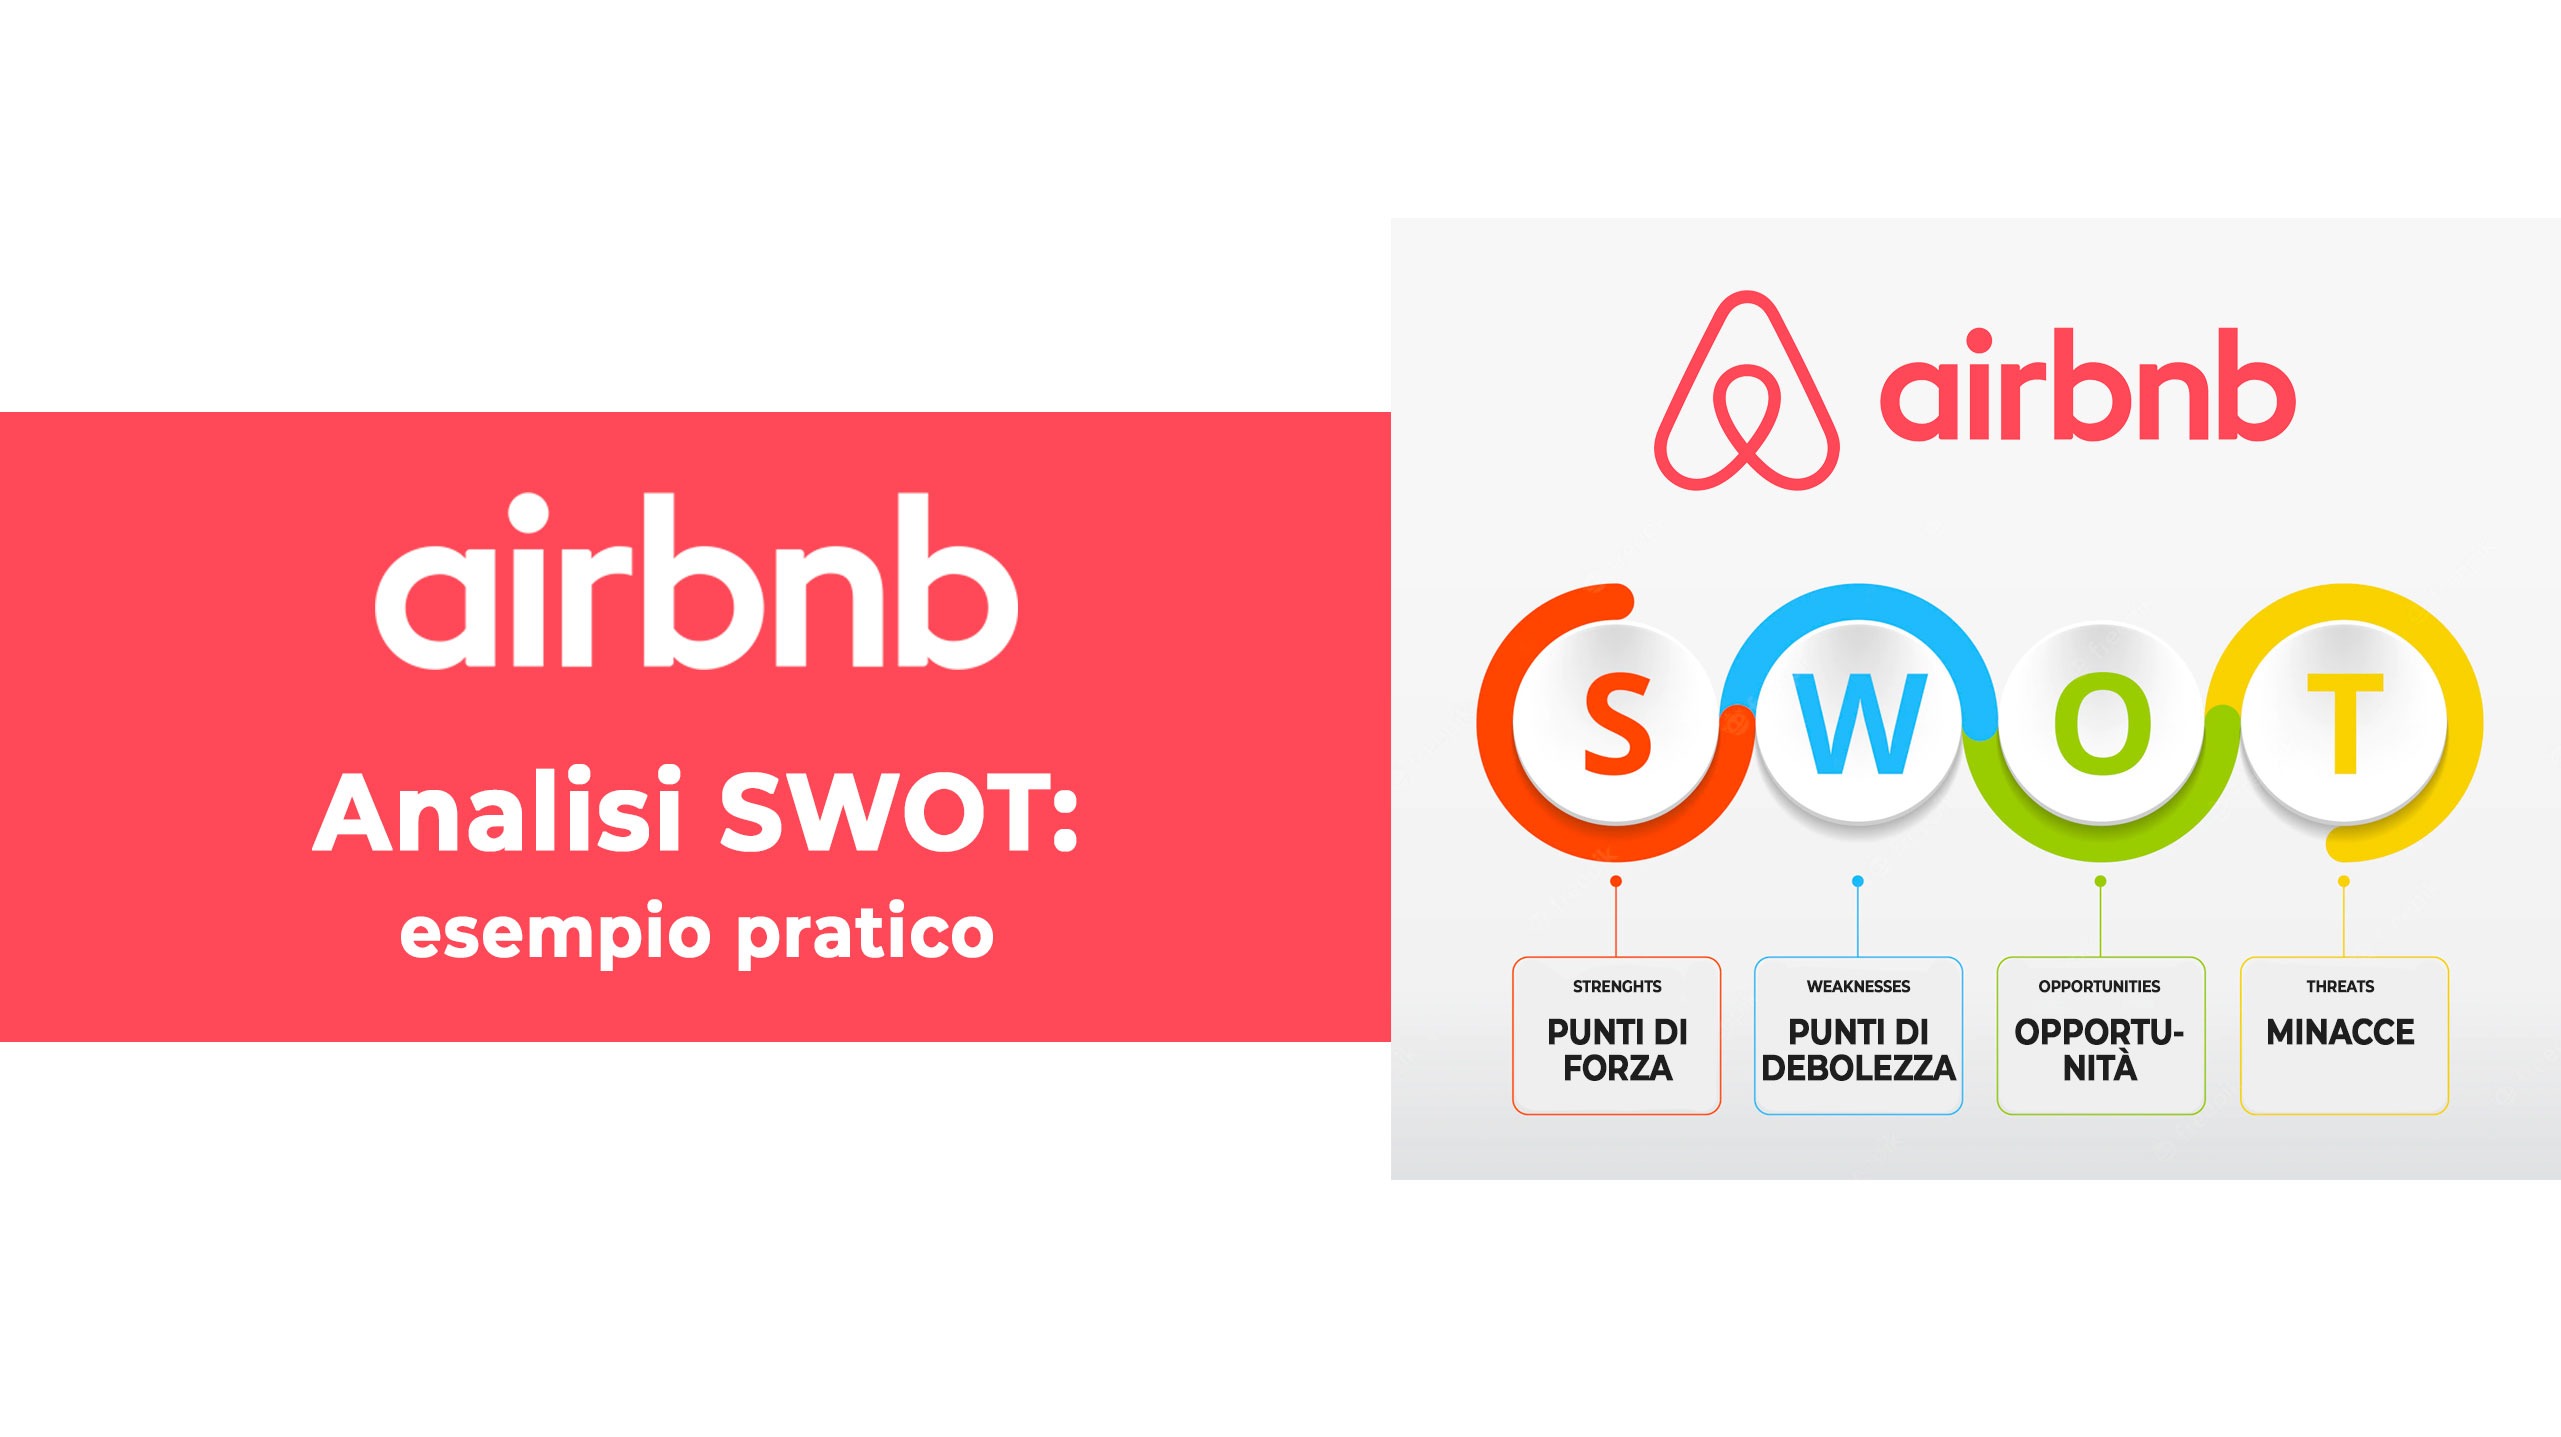 airbnb esempio pratico di analisi SWOT